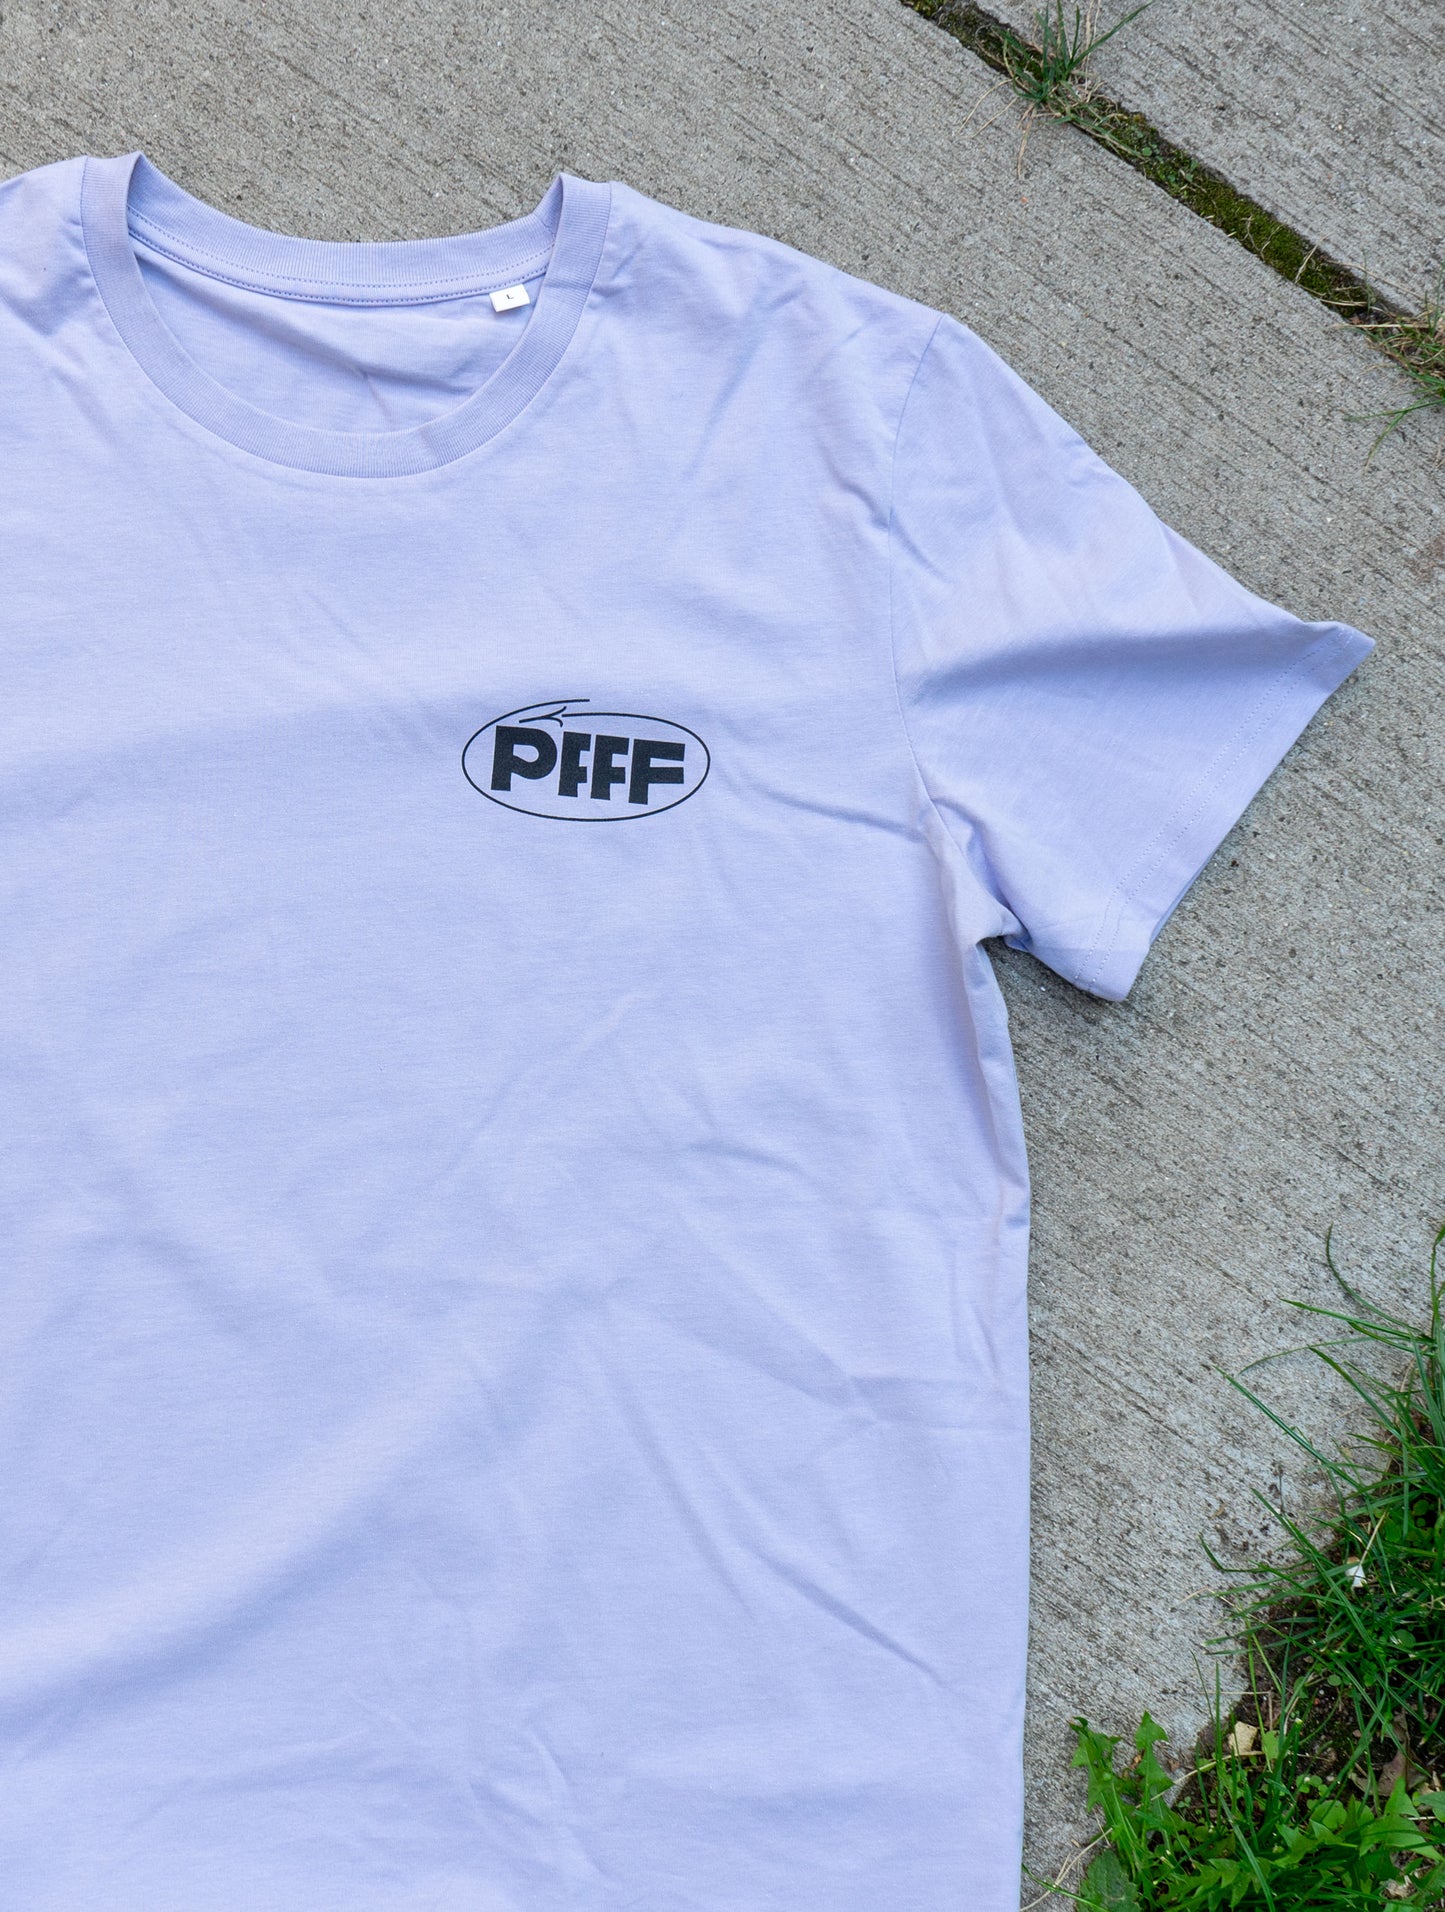 PFFFestival-Shirt — PFFF! X ROIDS!